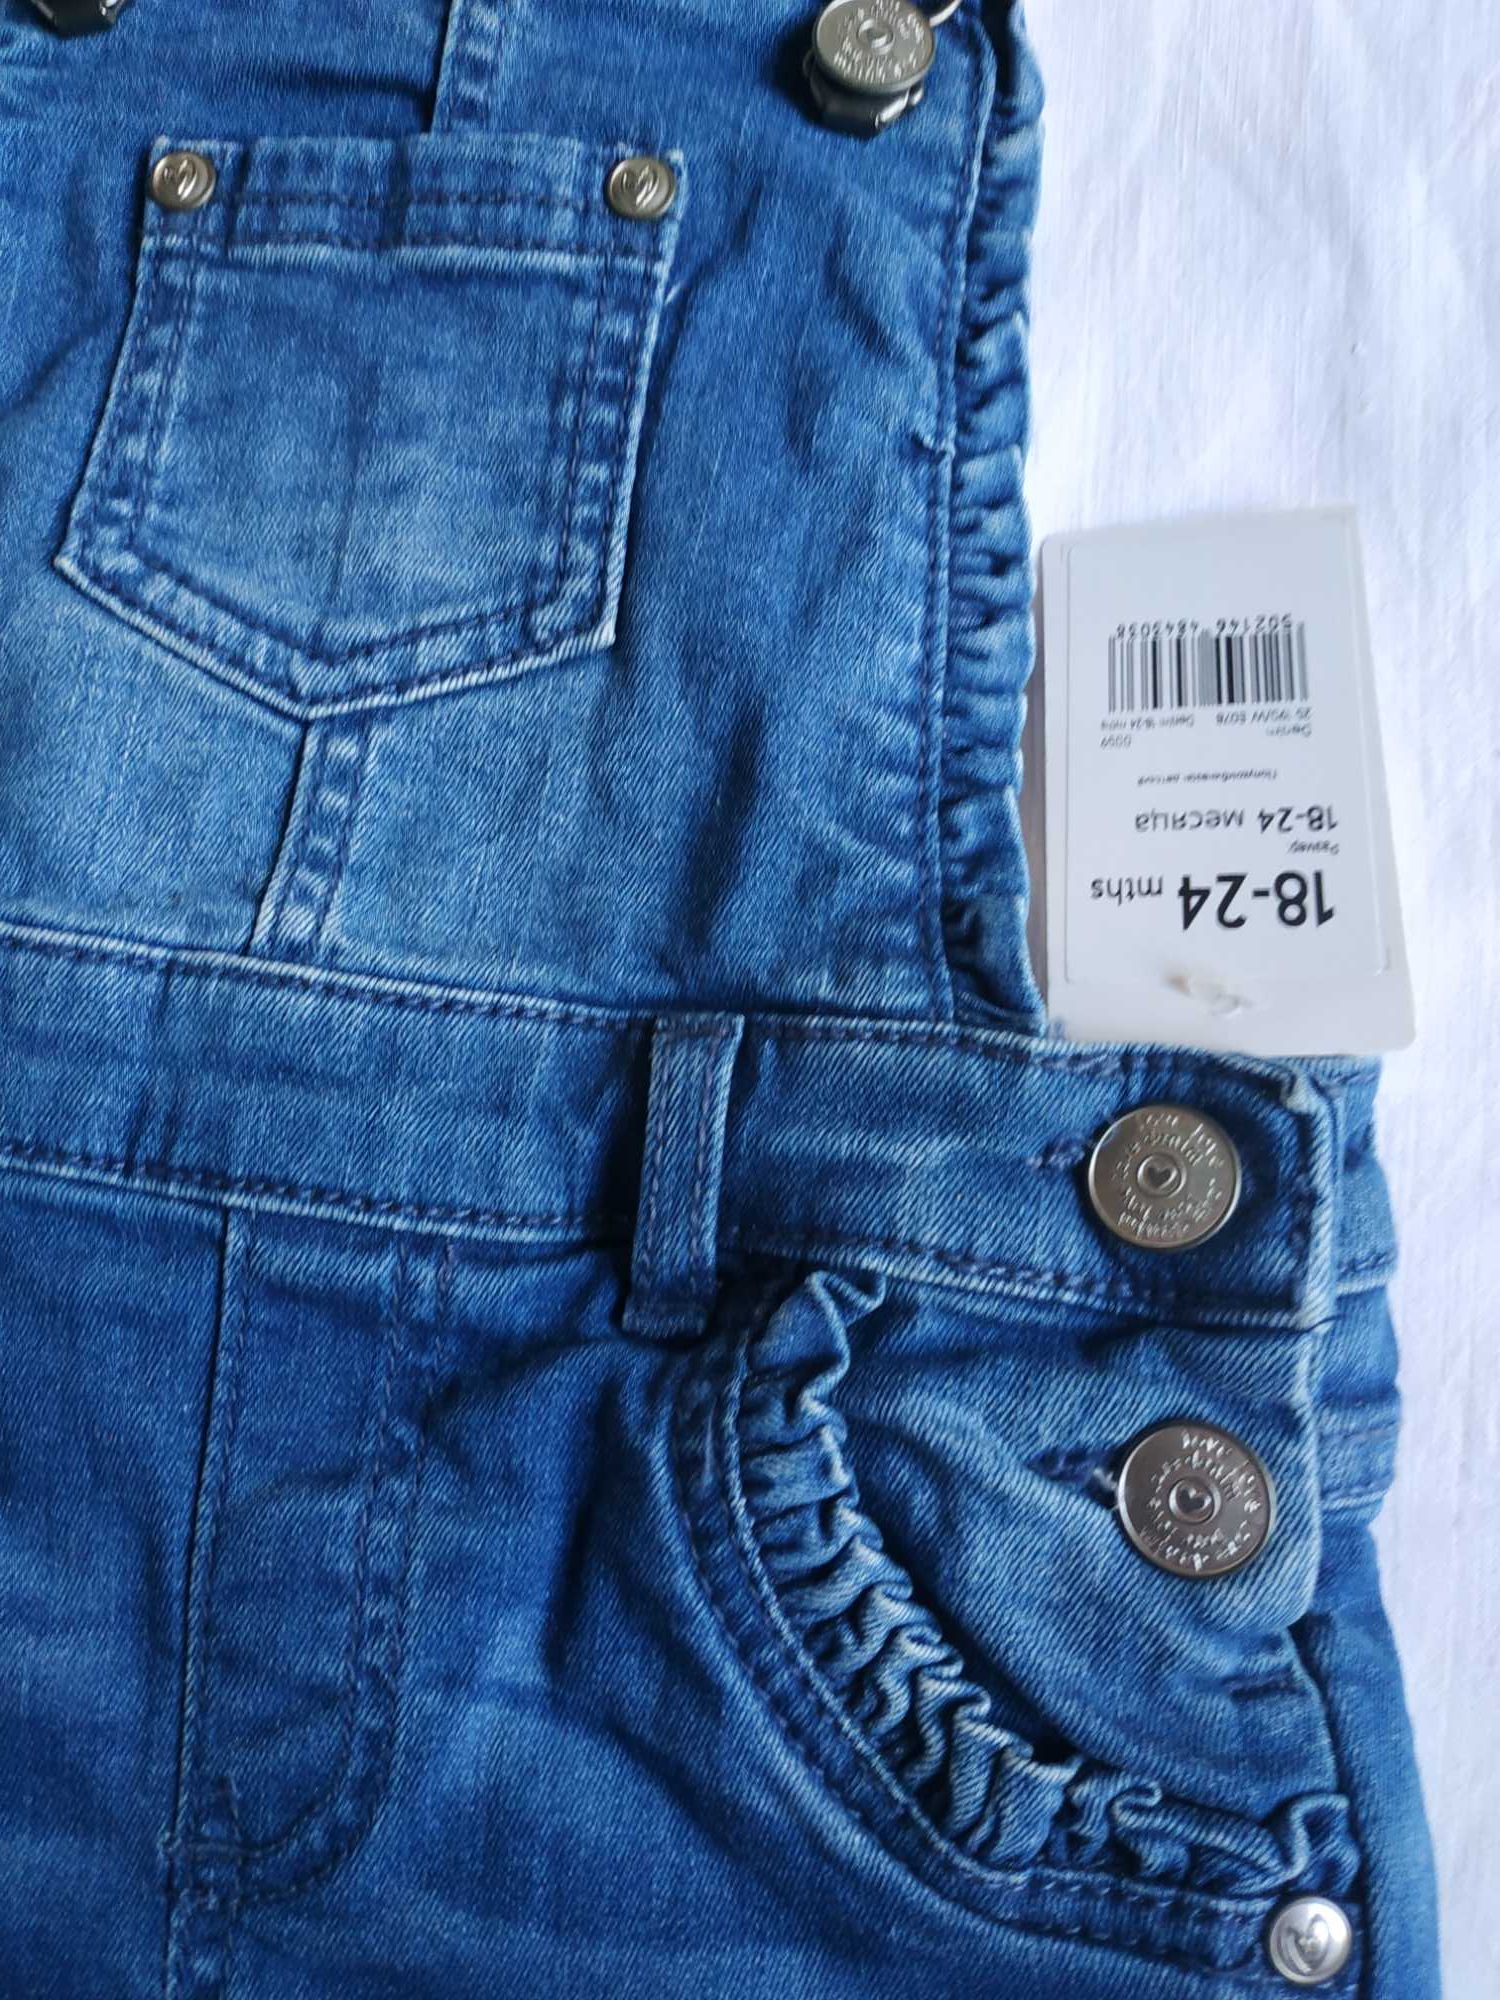 Новый джинсовый комбинезон джинсы Mothercare 18-24мес и 12-18мес